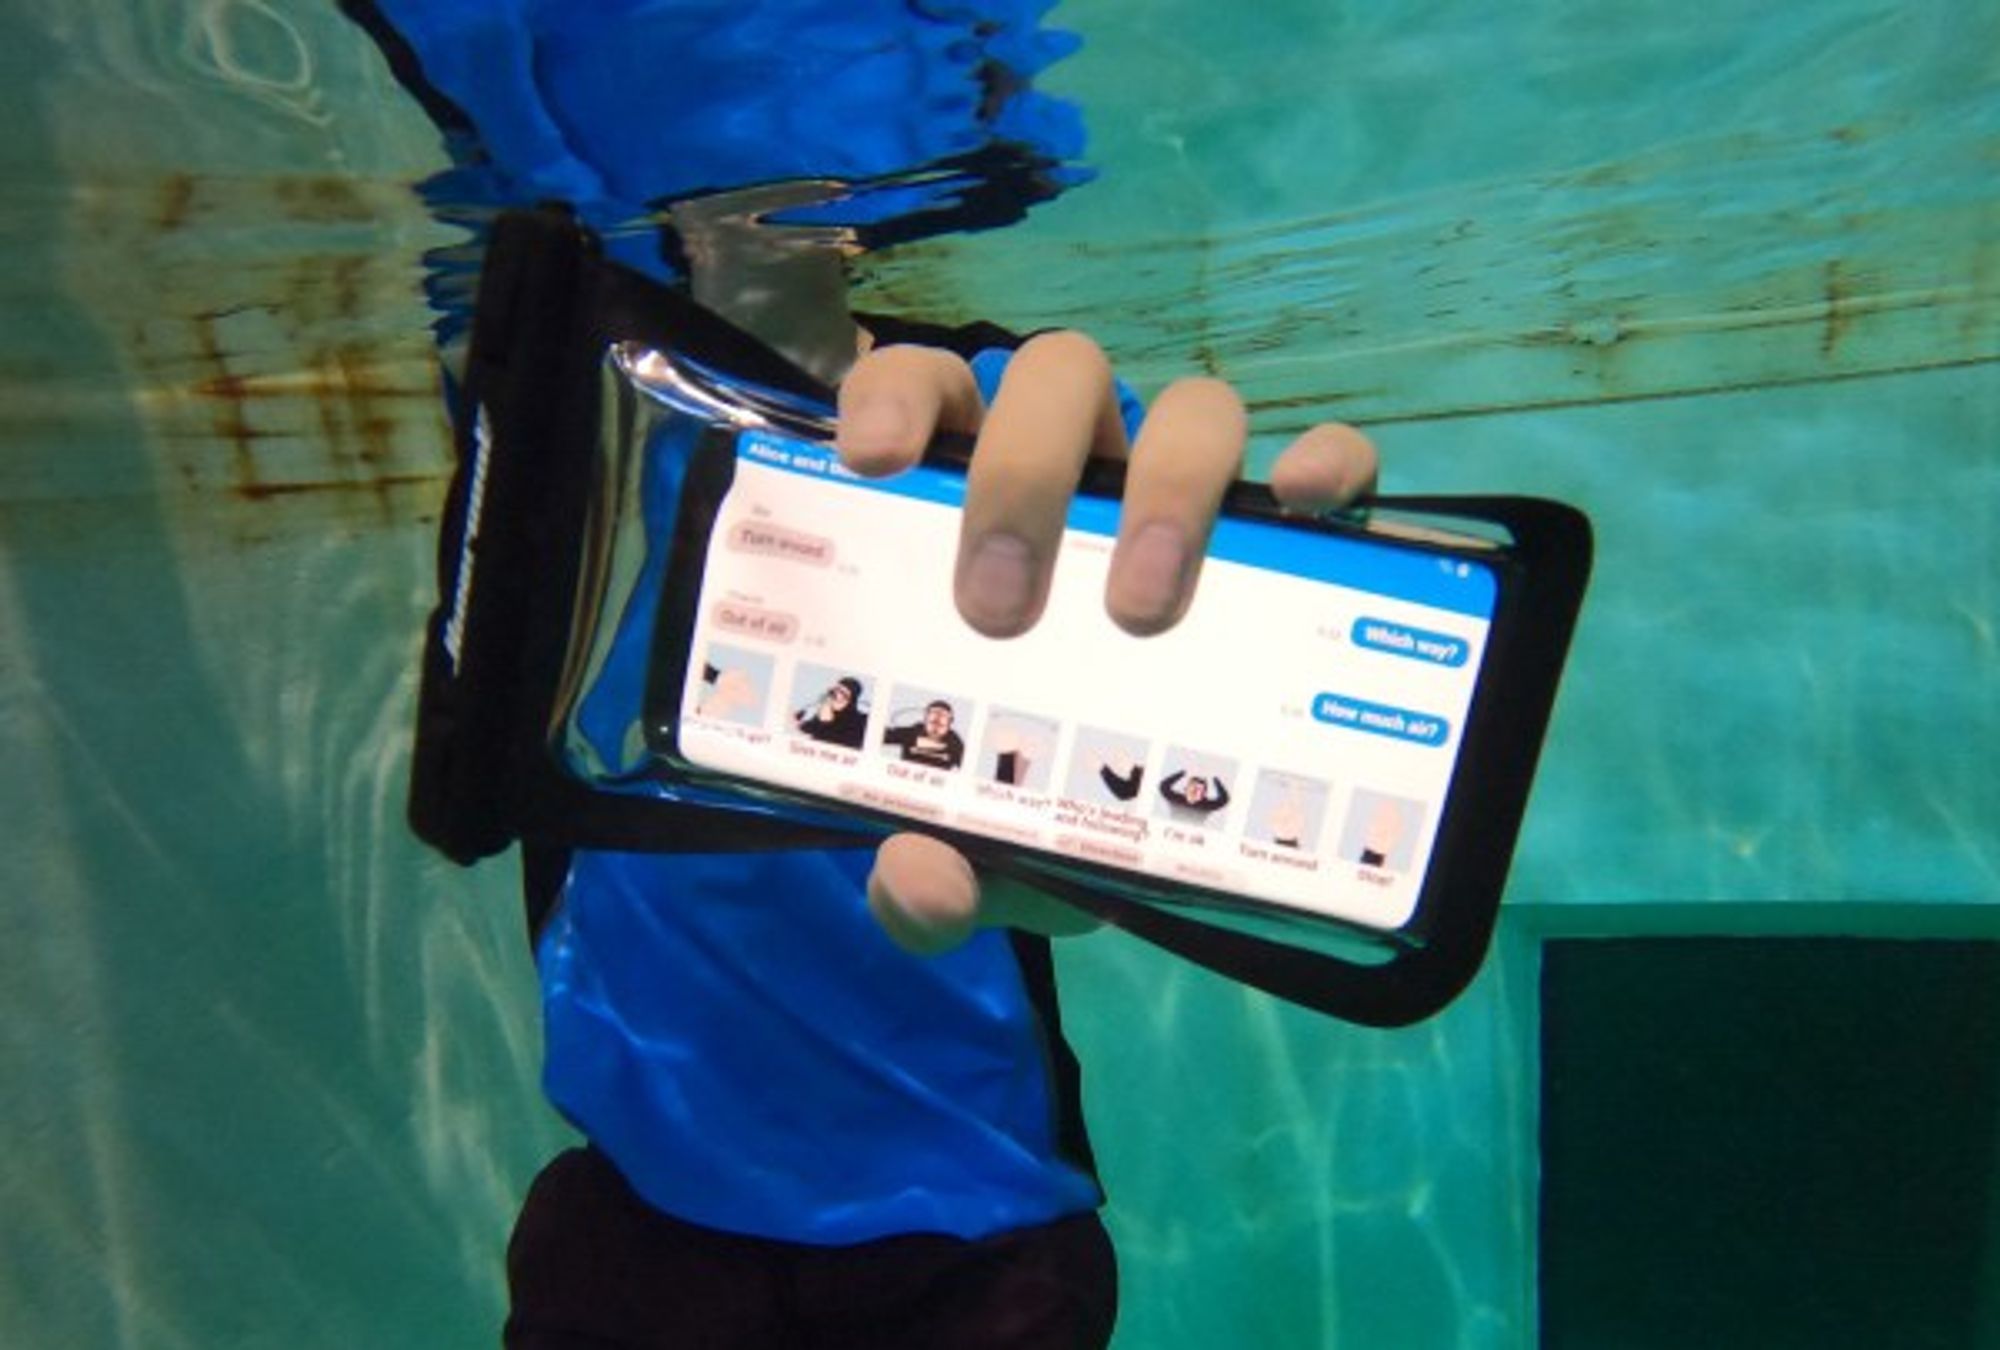 Finally, an underwater messaging app